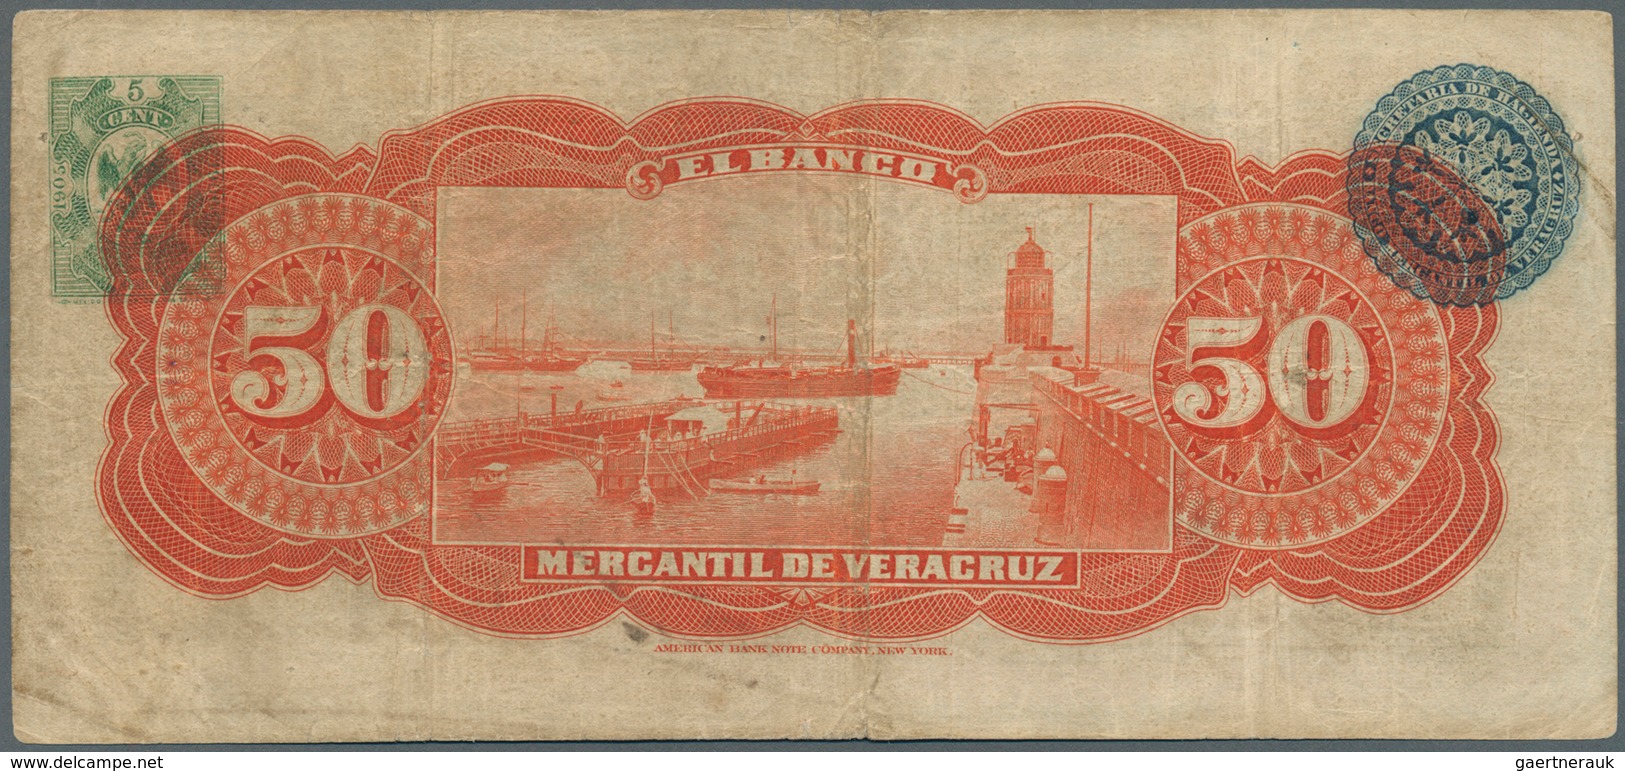 02031 Mexico: Banco Mercantil De Veracruz 50 Pesos November 8th 1905, P.S441, Highly Rare Note In Nice Con - Mexico